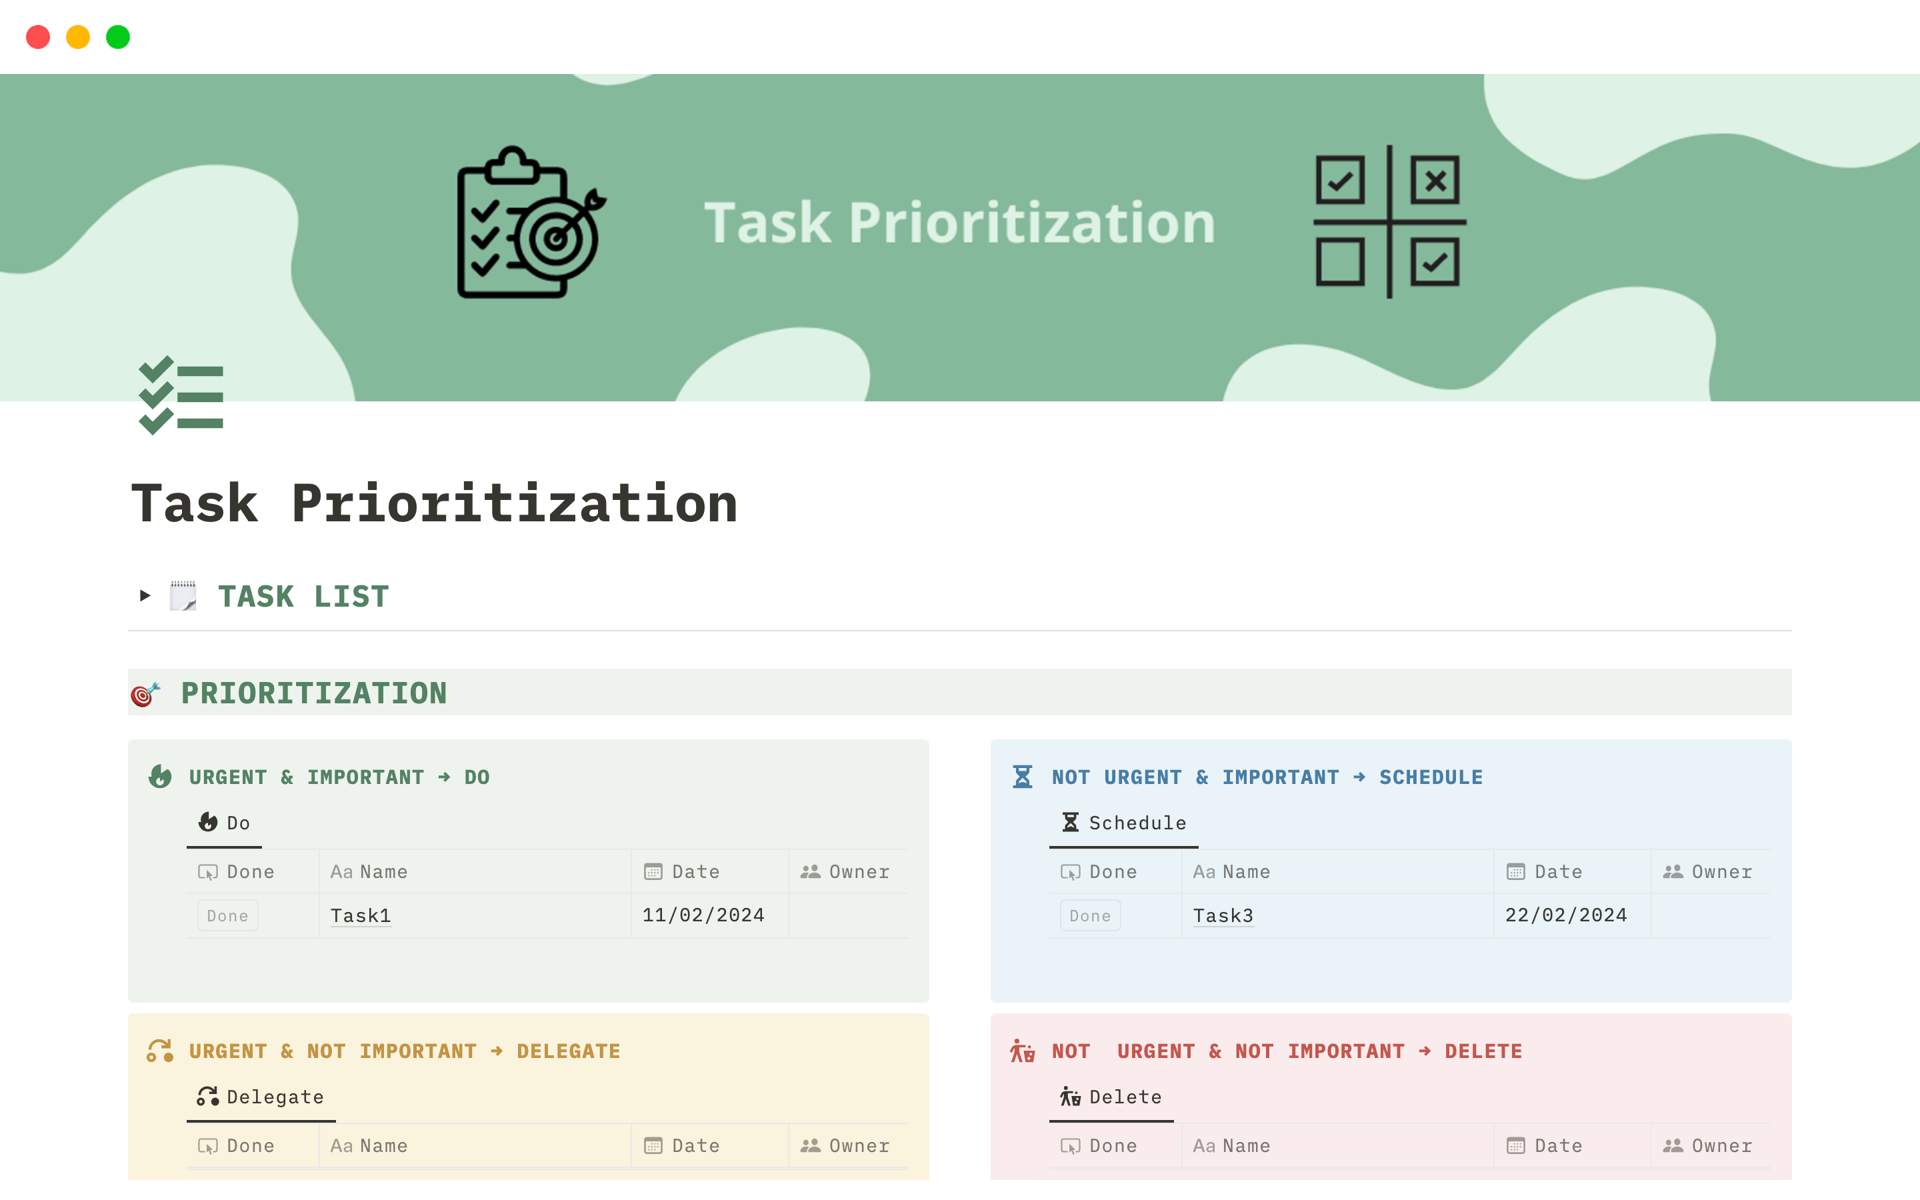 Uma prévia do modelo para Simple Task Prioritization